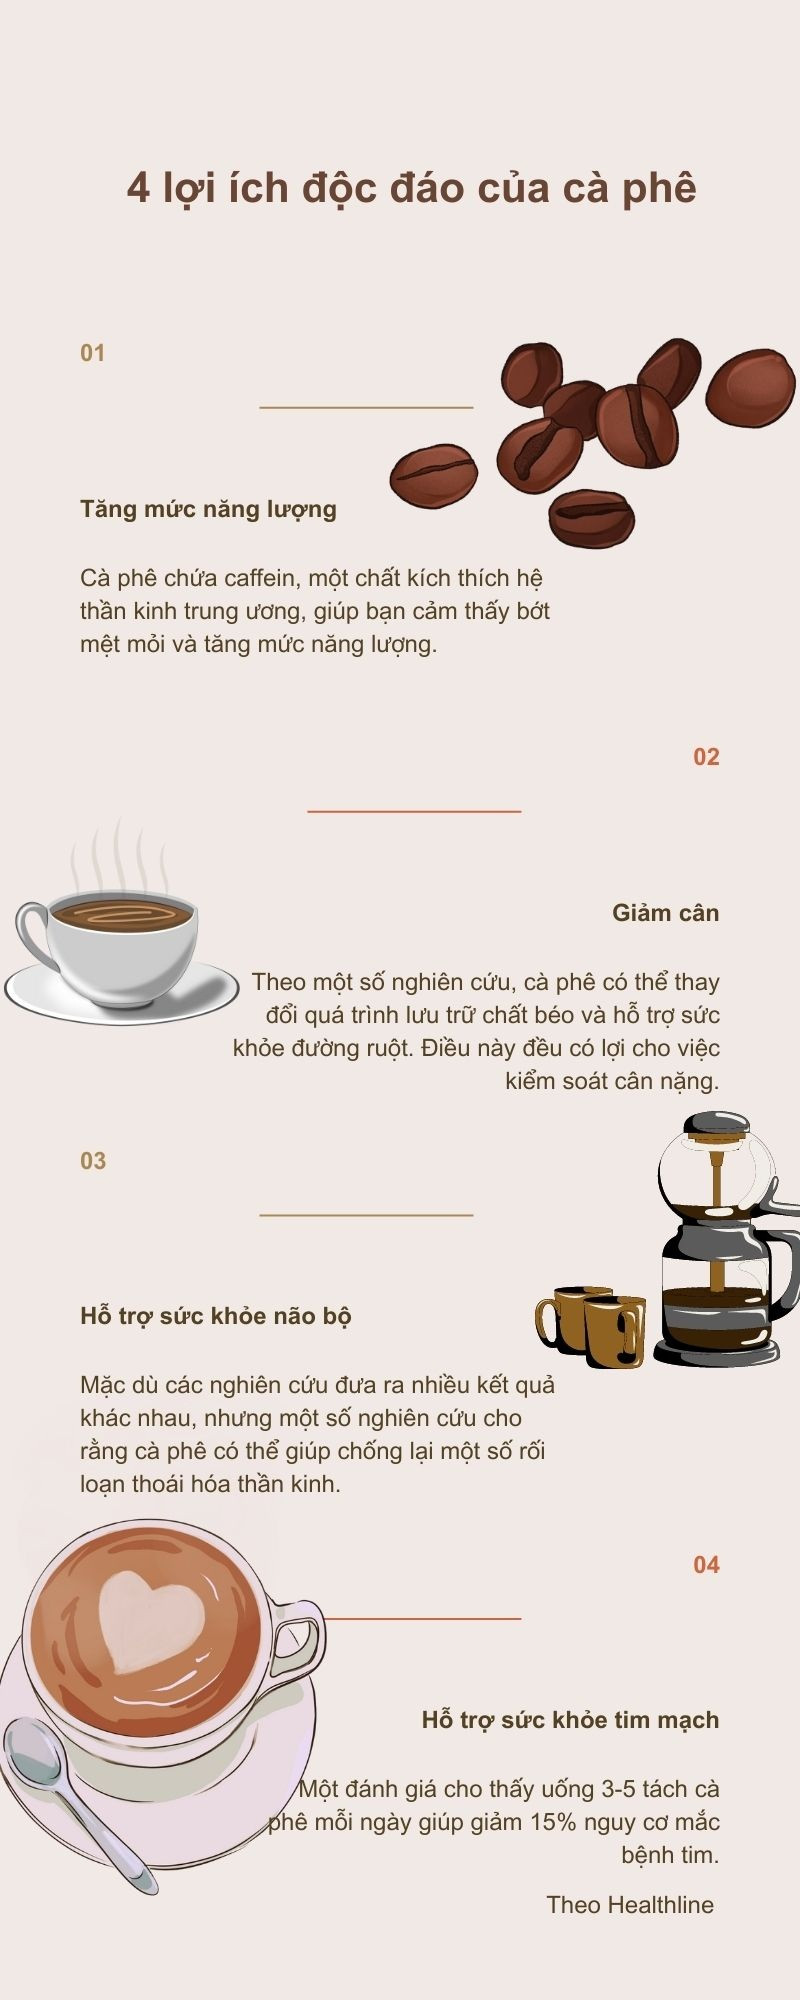 6 lợi ích sức khỏe của cà phê được khoa học chứng minh - 2